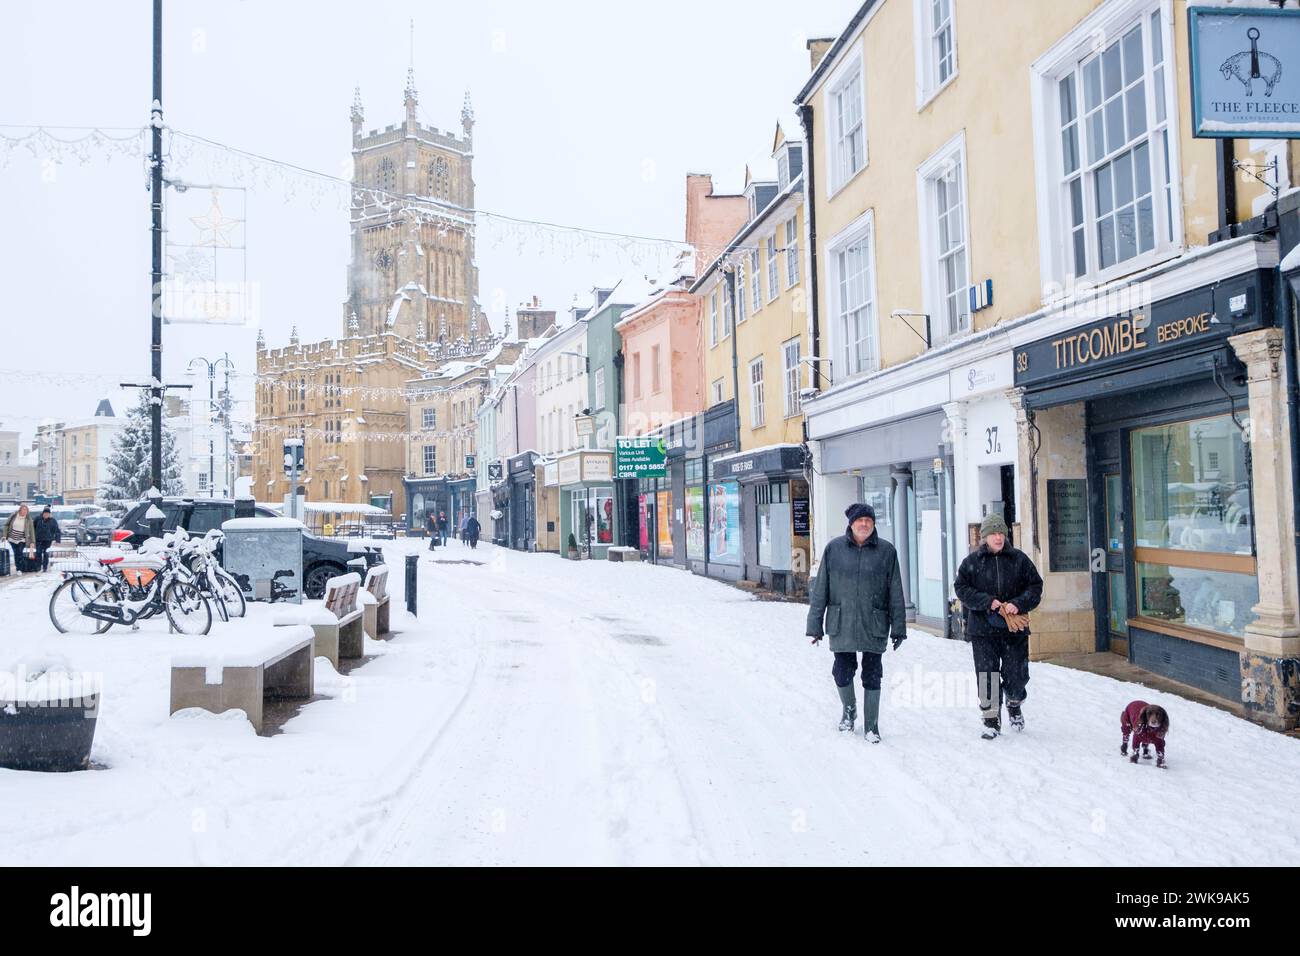 De fortes chutes de neige sont tombées dans le Cirencester dans les Cotswolds. Les gens sont vus marcher et jouer dans le parc Cirencester et sur le terrain de l'abbaye. Banque D'Images